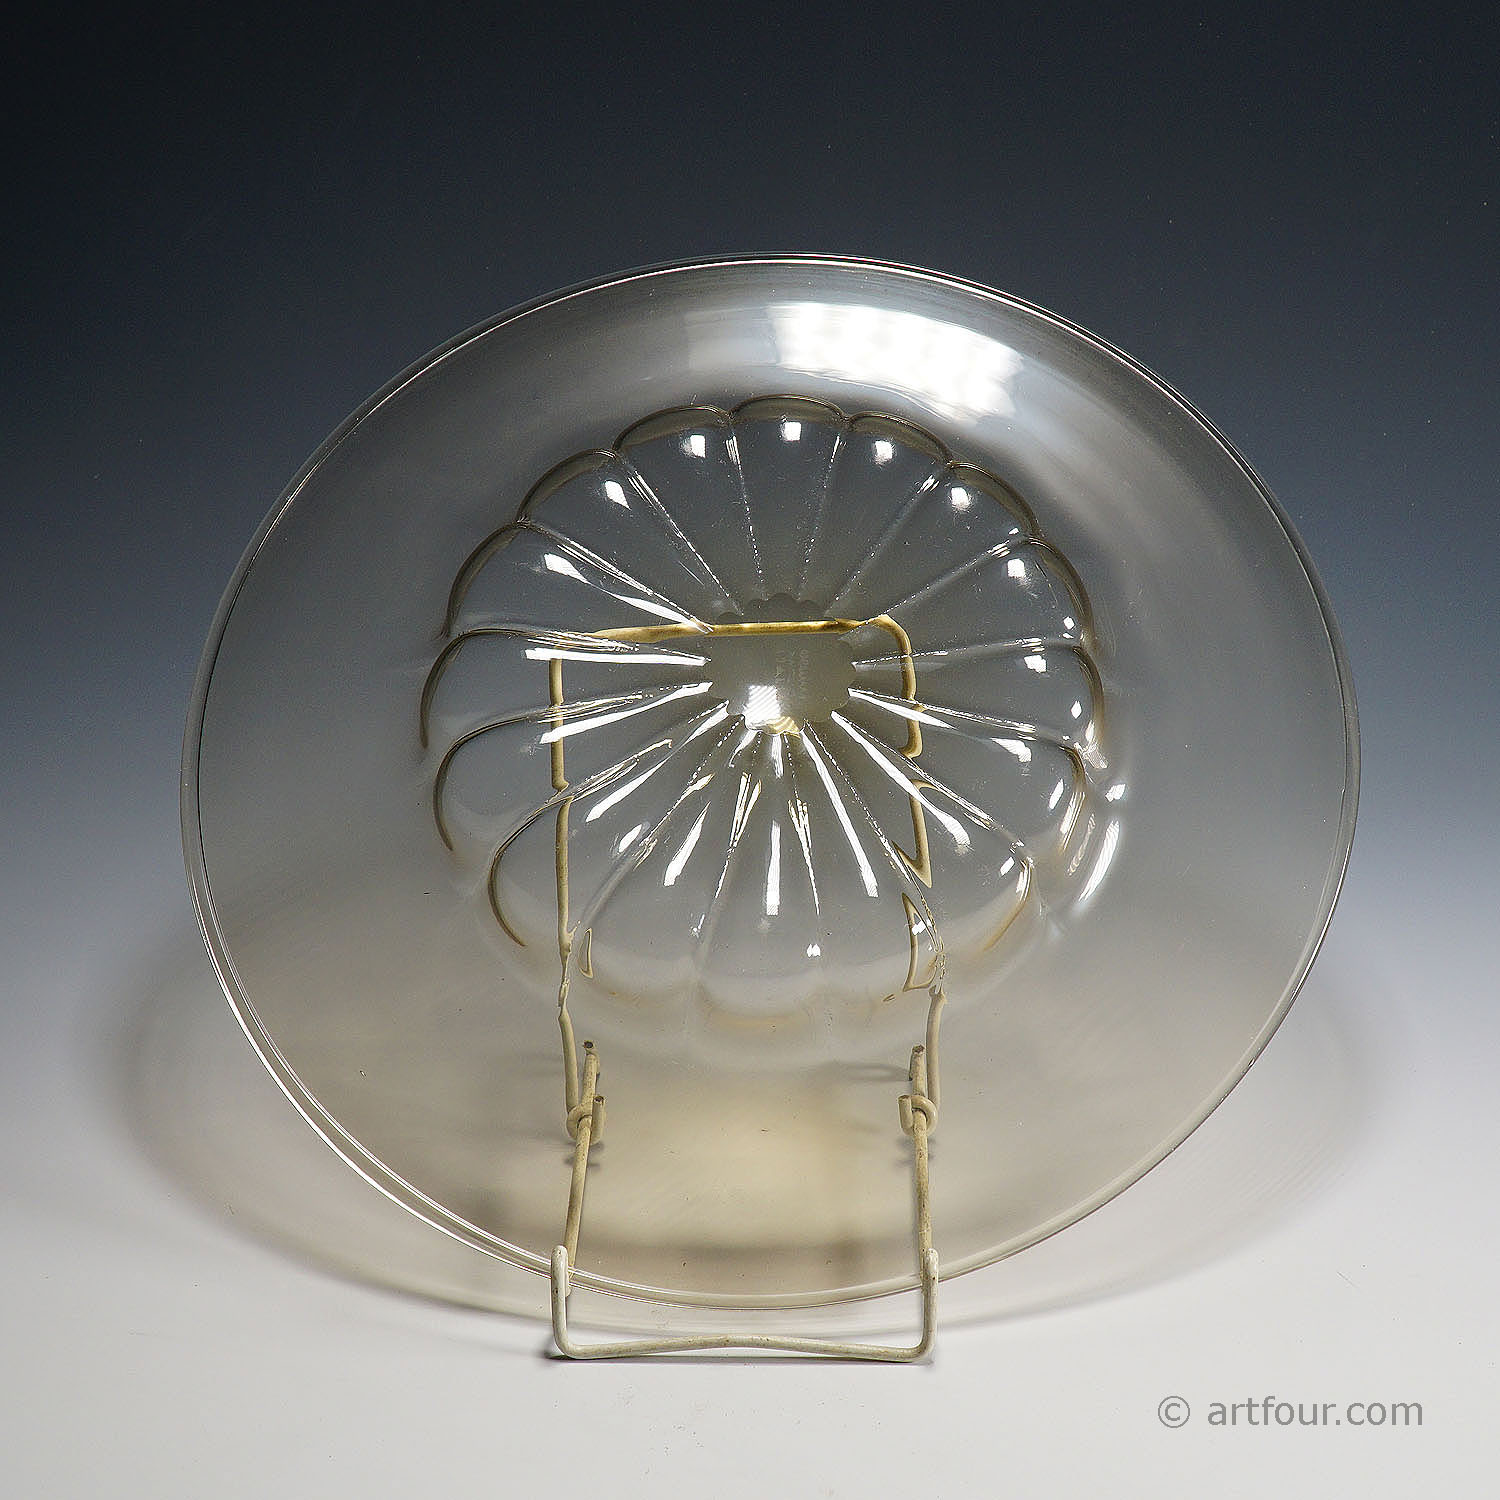 Vetro Soffiato Glass Plate by Vittorio Zecchin for Venini Murano ca. 1925